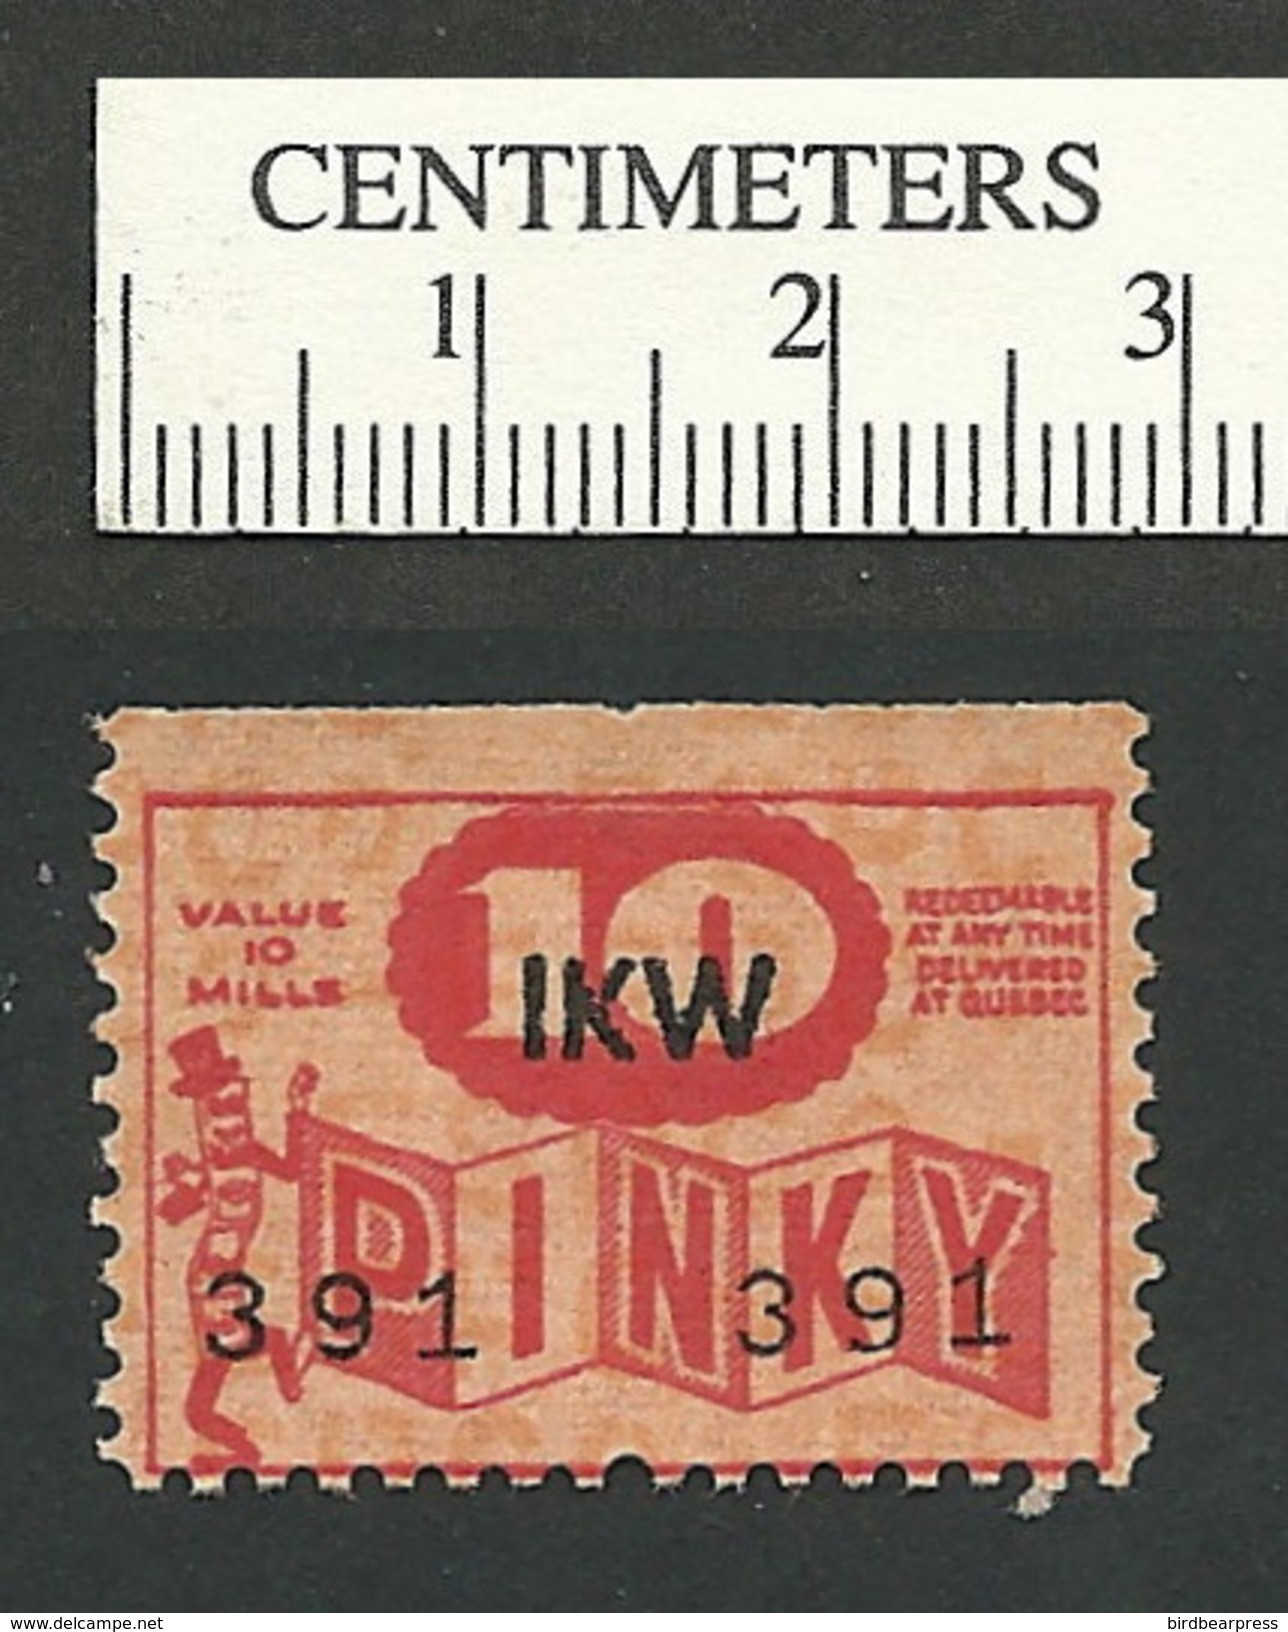 B49-12 CANADA Pinky Trading Stamp 10 Mills 4i Quebec MNH - Werbemarken (Vignetten)